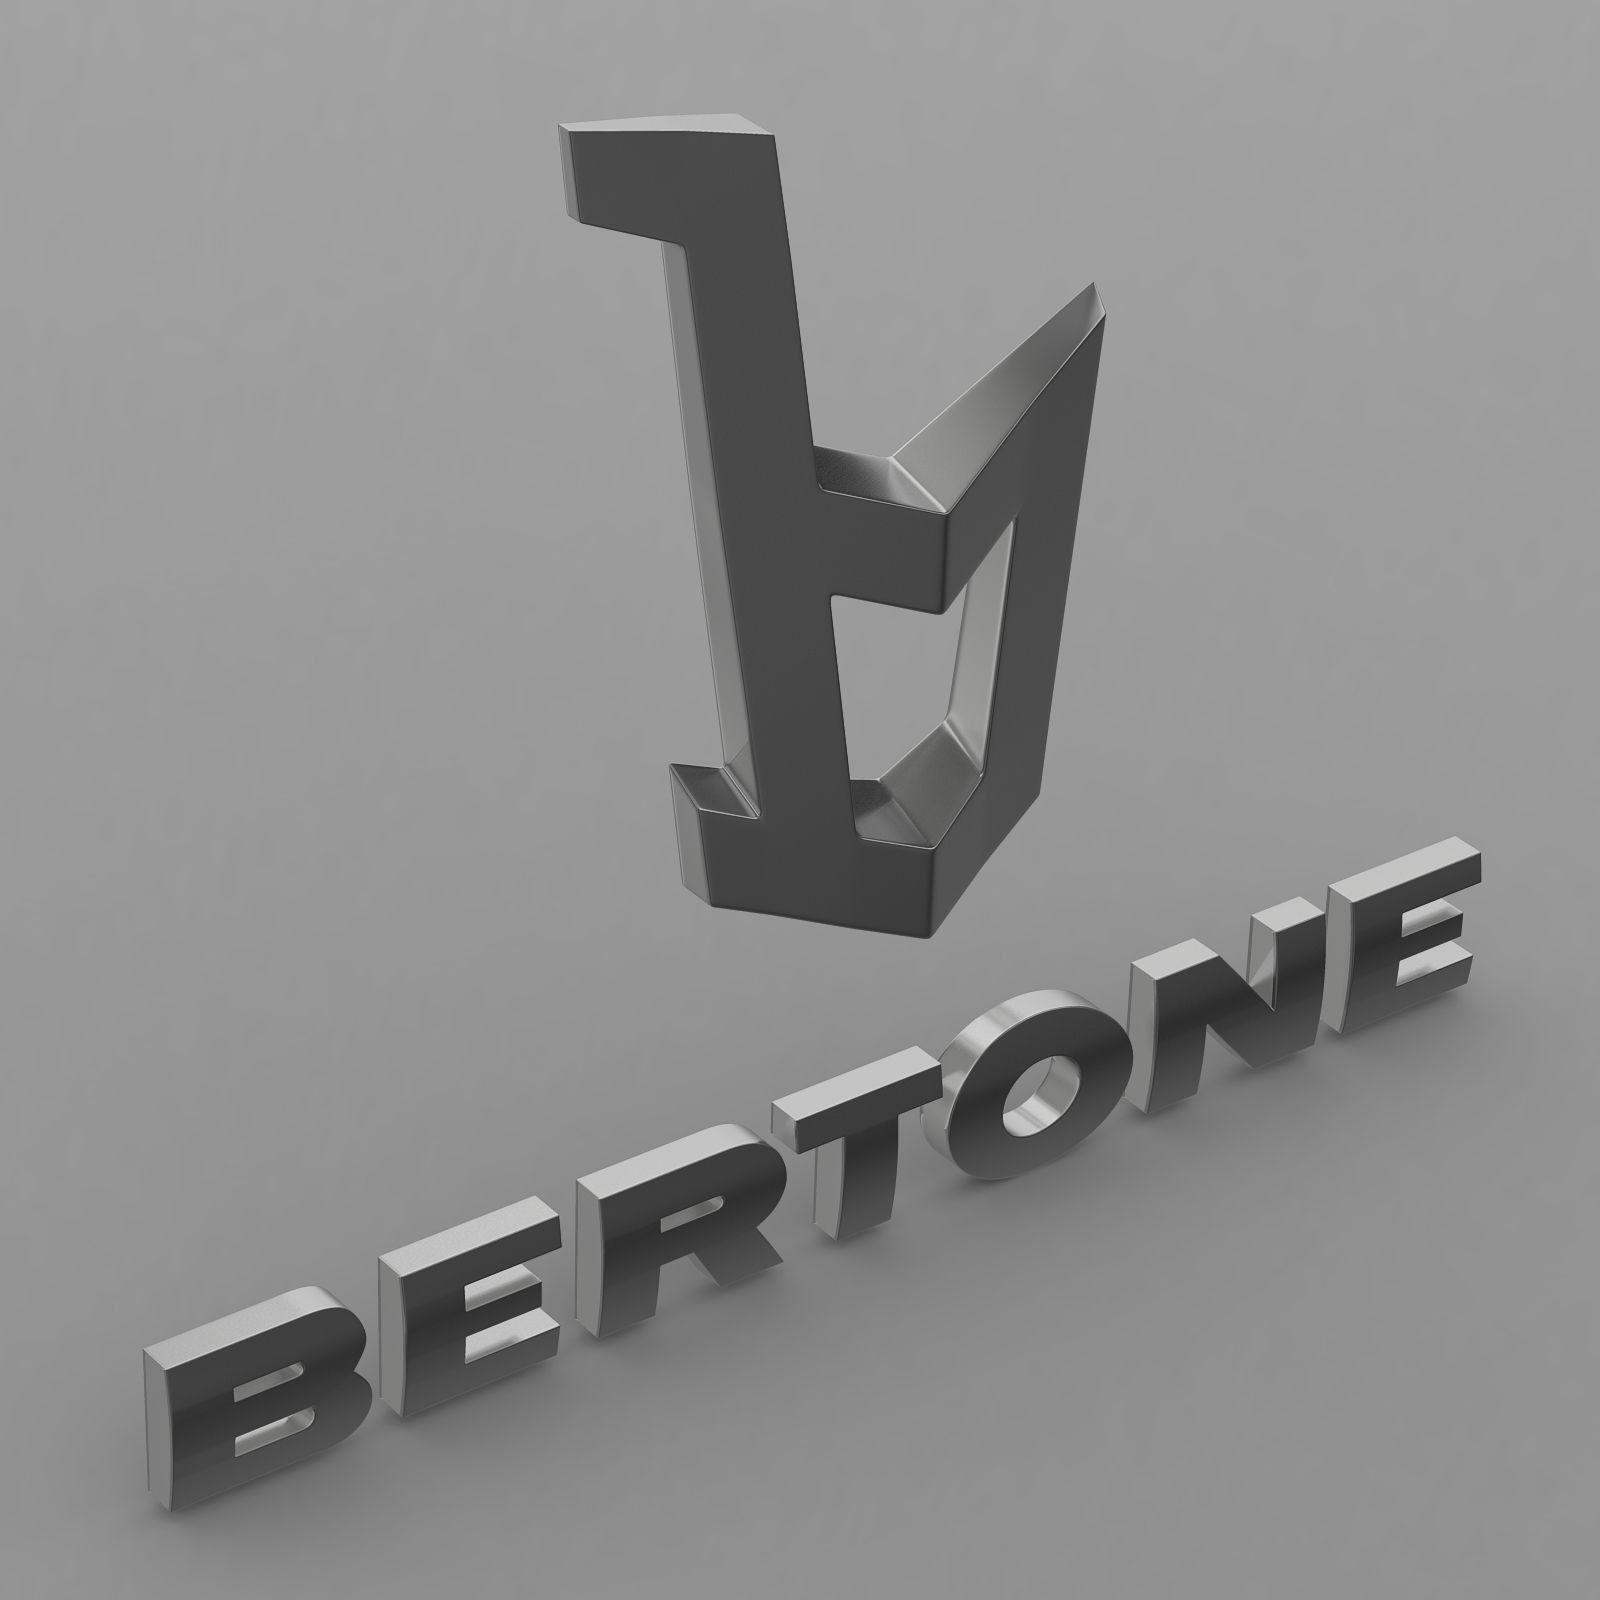 Bertone Car Logo - 3D model bertone logo